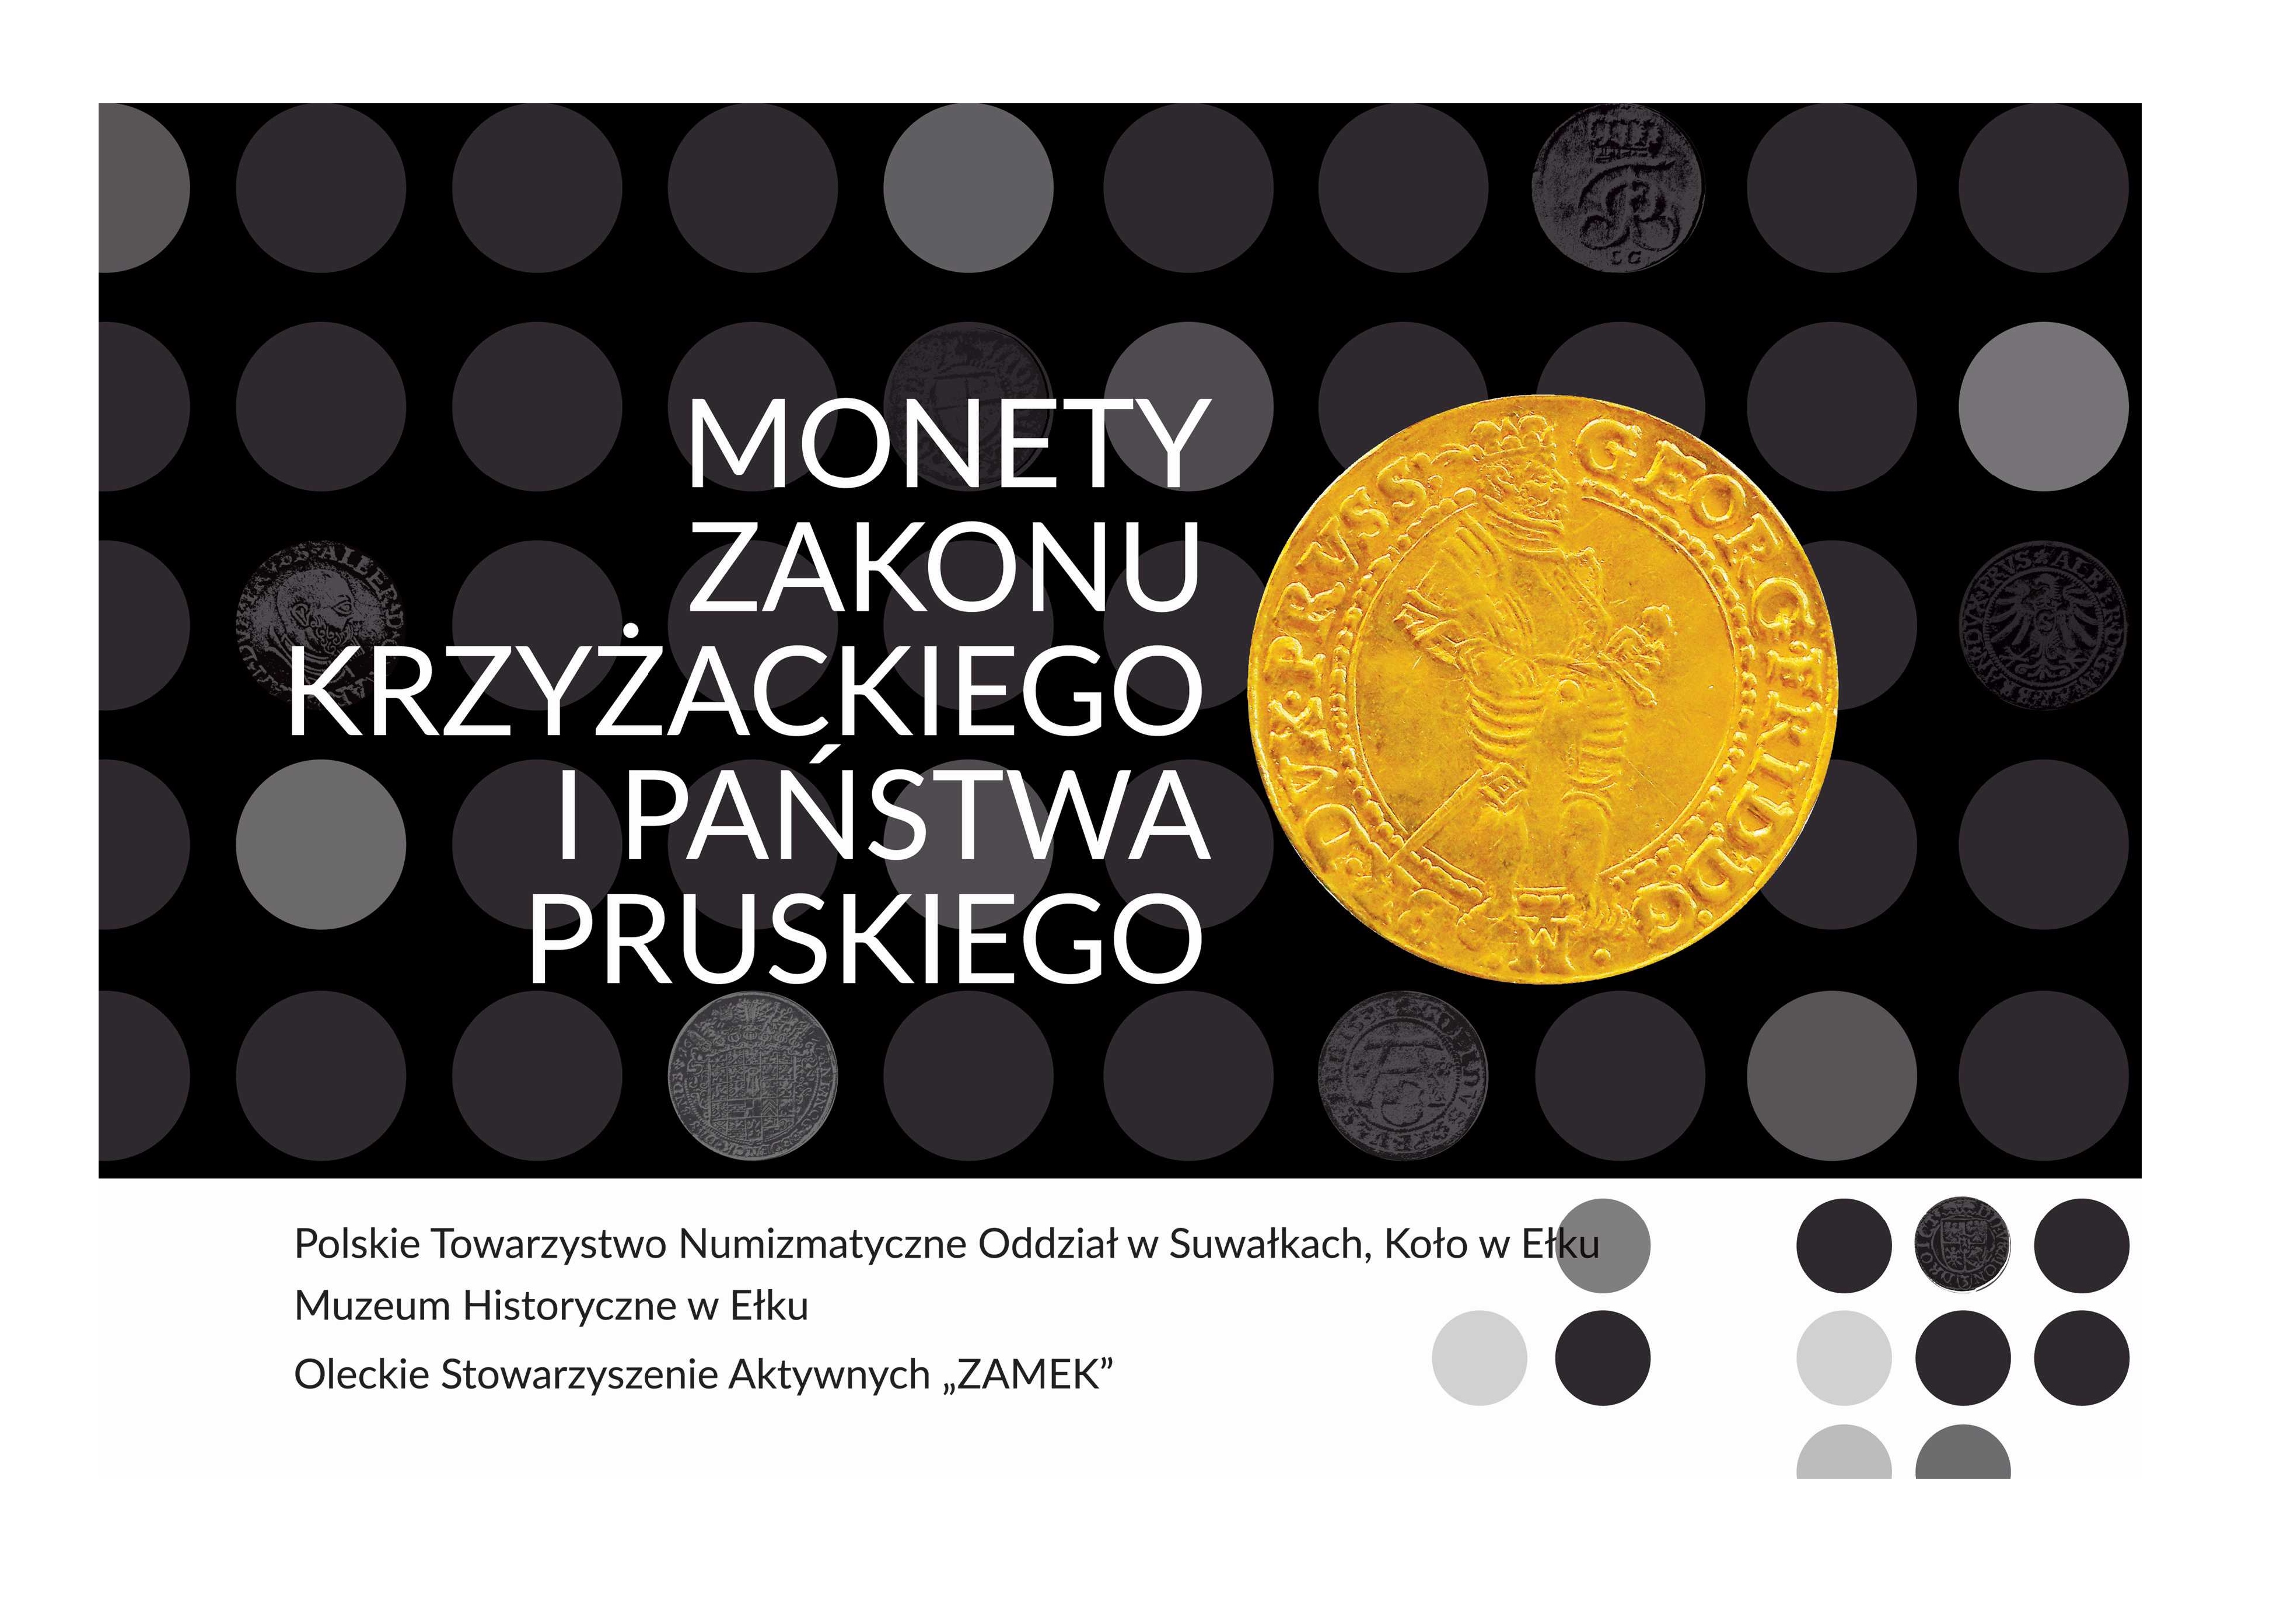 Otwarcie wystawy "Monety zakonu krzyżackiego i państwa pruskiego"